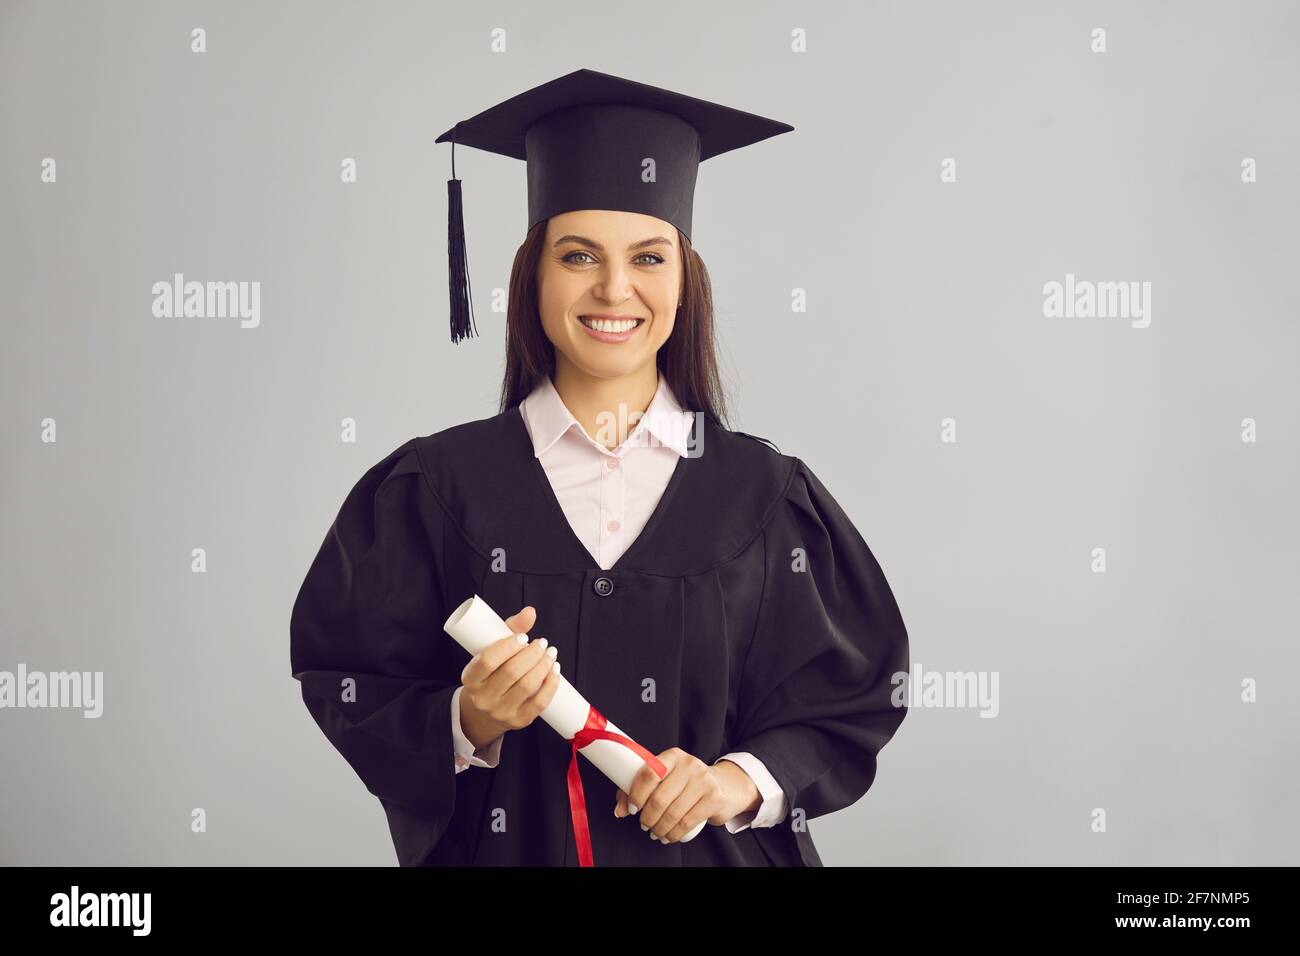 Weibliche Absolventin, die auf einem grauen Hintergrund mit einem Diplom in den Händen steht und lächelt. Stockfoto